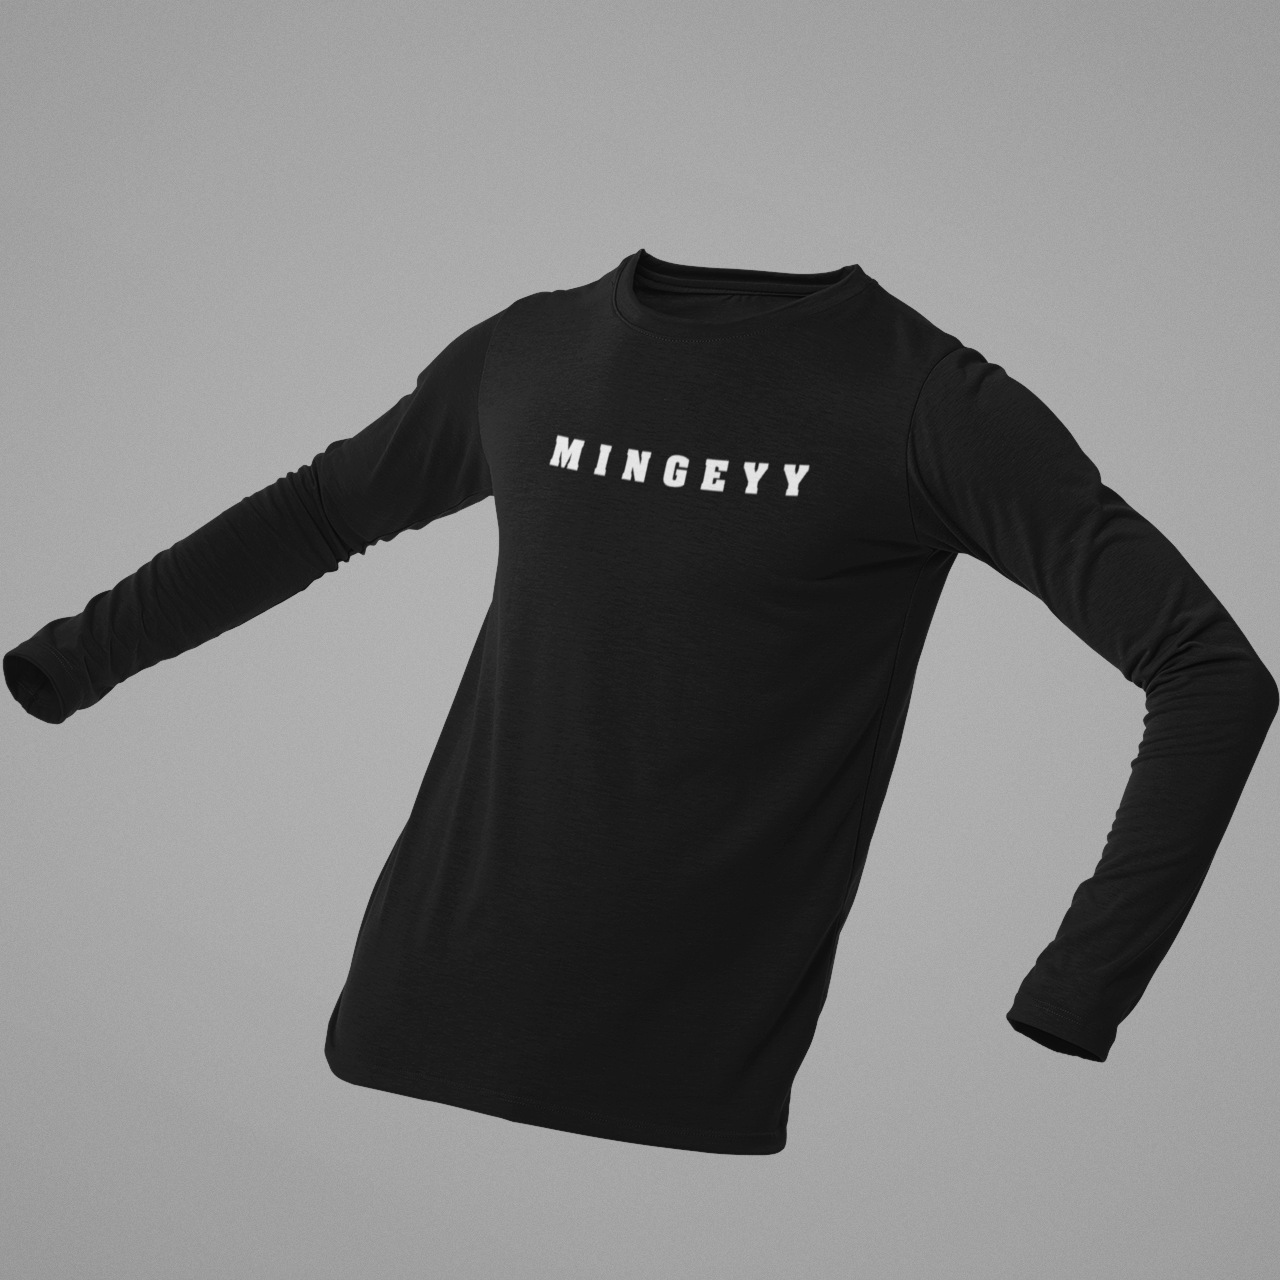 Mingeyy Full Sleeves T-shirt - ateedude